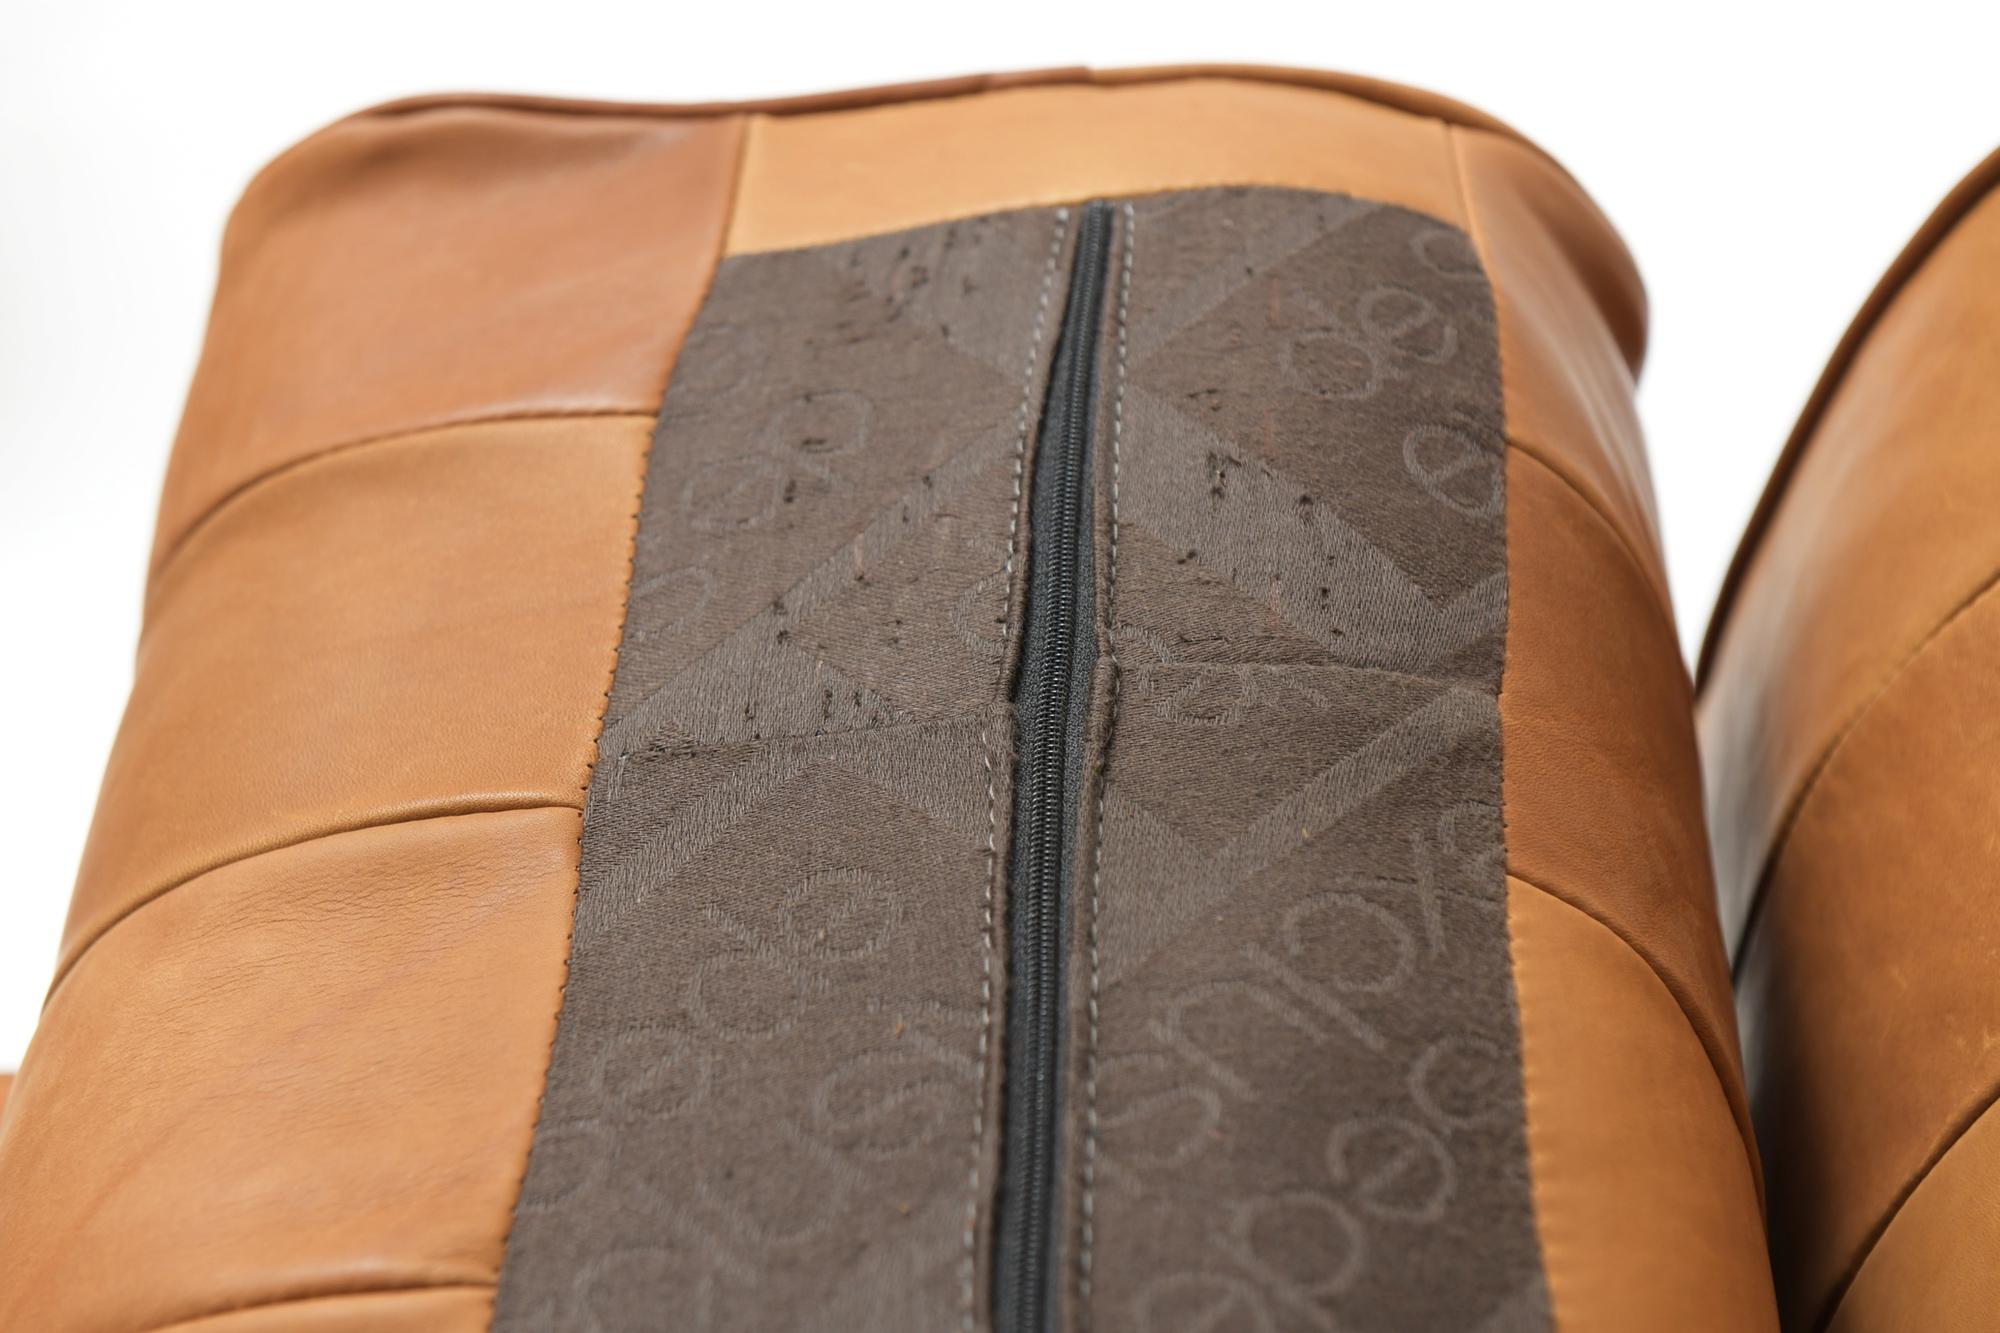 DS 88 in New Cognac Patchwork Leather, De Sede Team, De Sede 9